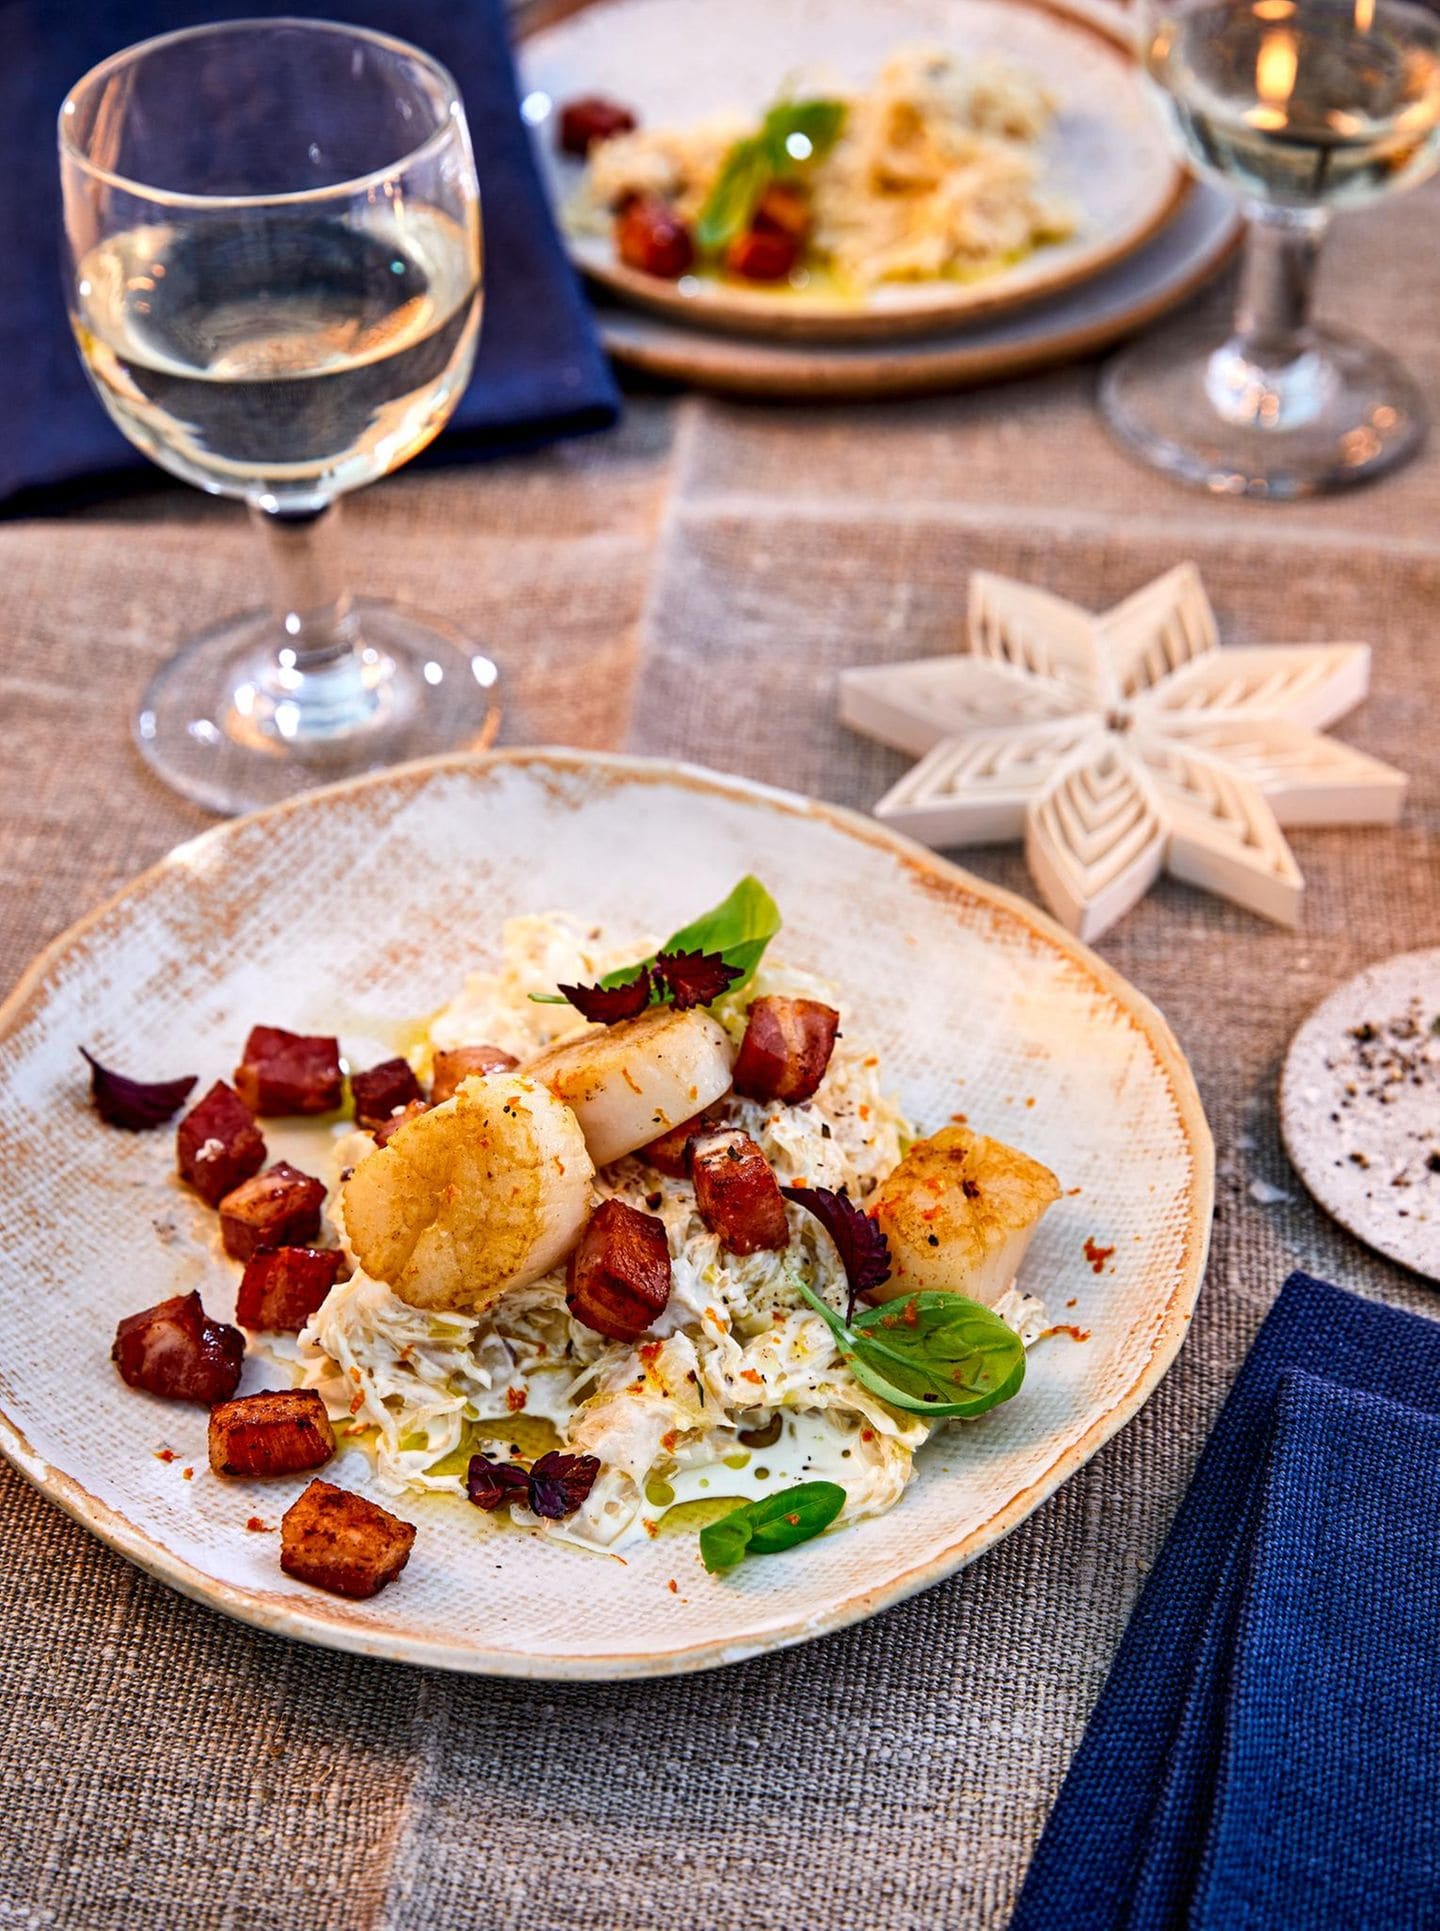 Auf einem festlich gedeckten Tisch mit Weingläsern, Sternen und blauen Servietten steht ein Teller mit Essen